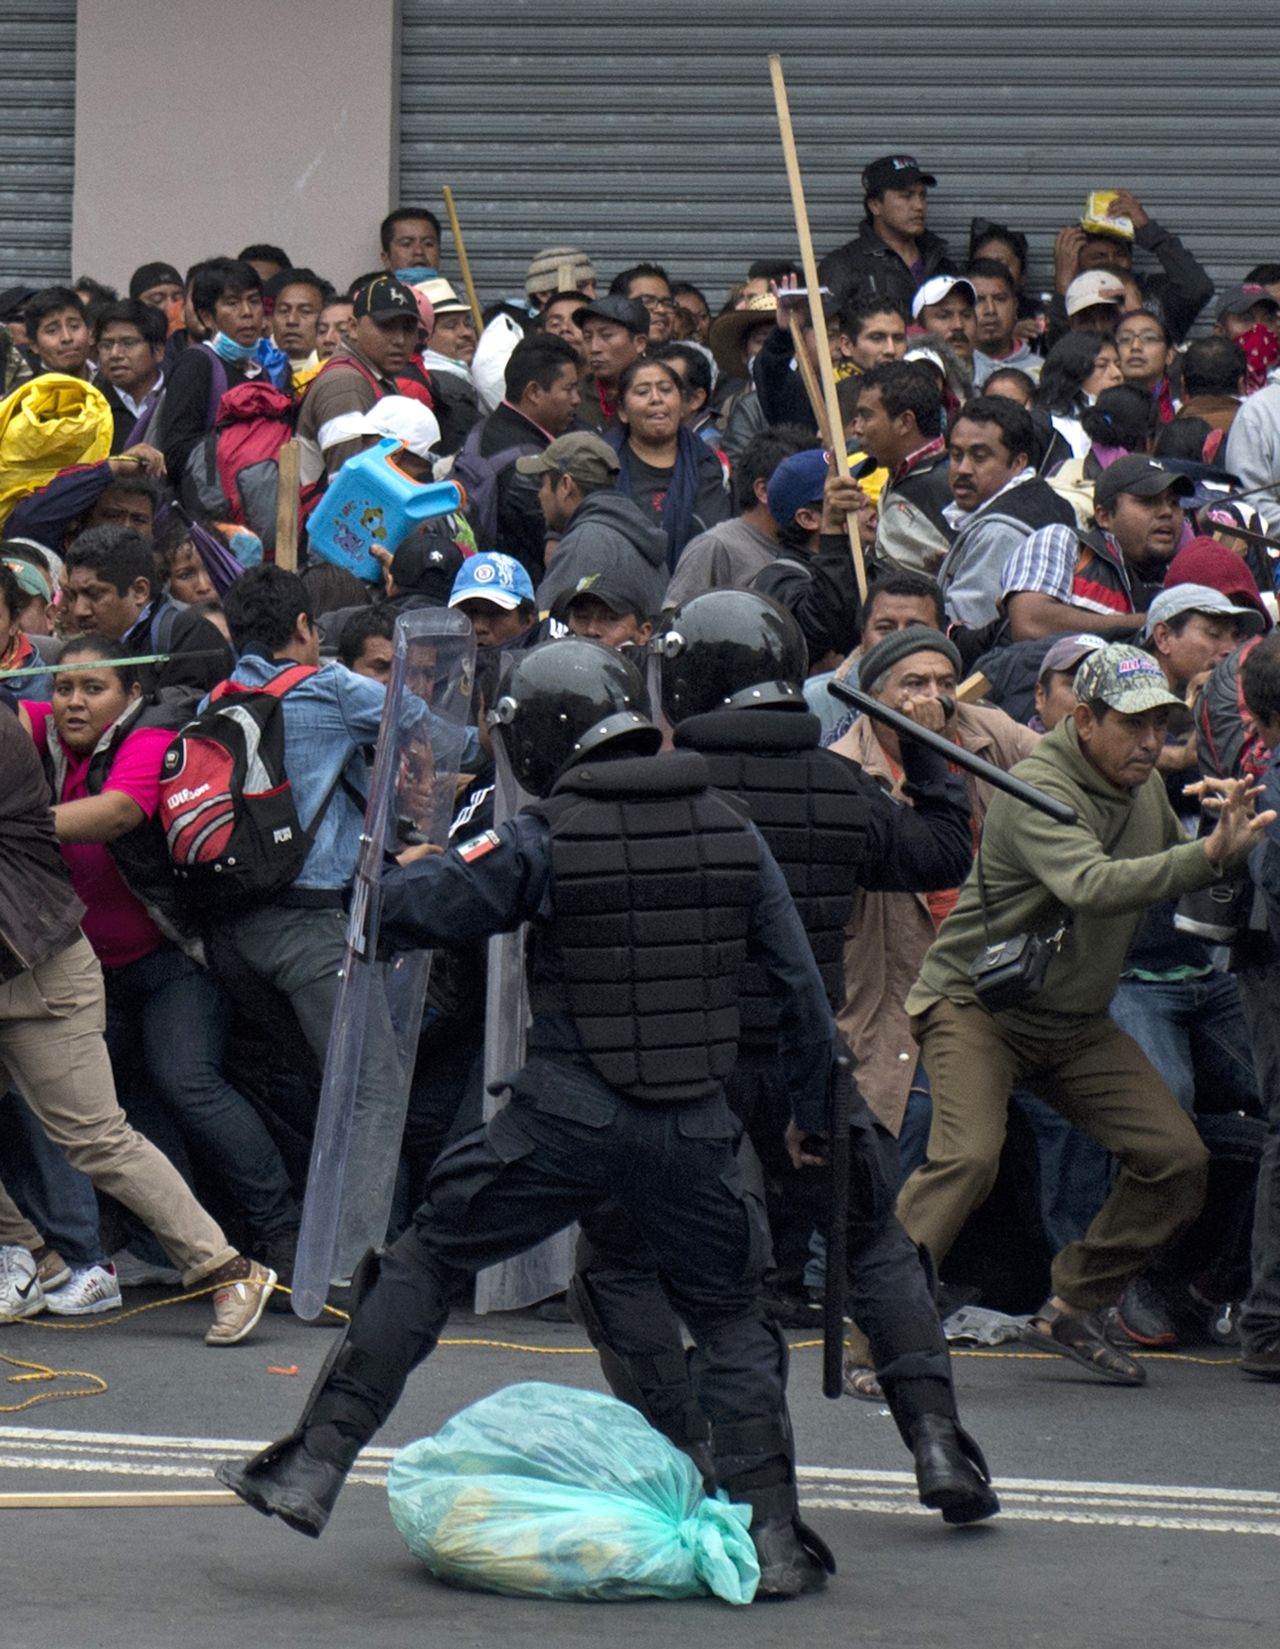 La Policía Federal desalojó el Zócalo de Ciudad de México con un operativo para la retirada de los profesores tras el vencimiento del ultimátum. Las autoridades usaron tanquetas de agua y gas lacrimógeno, mientras que algunos docentes respondieron con palos y petardos.